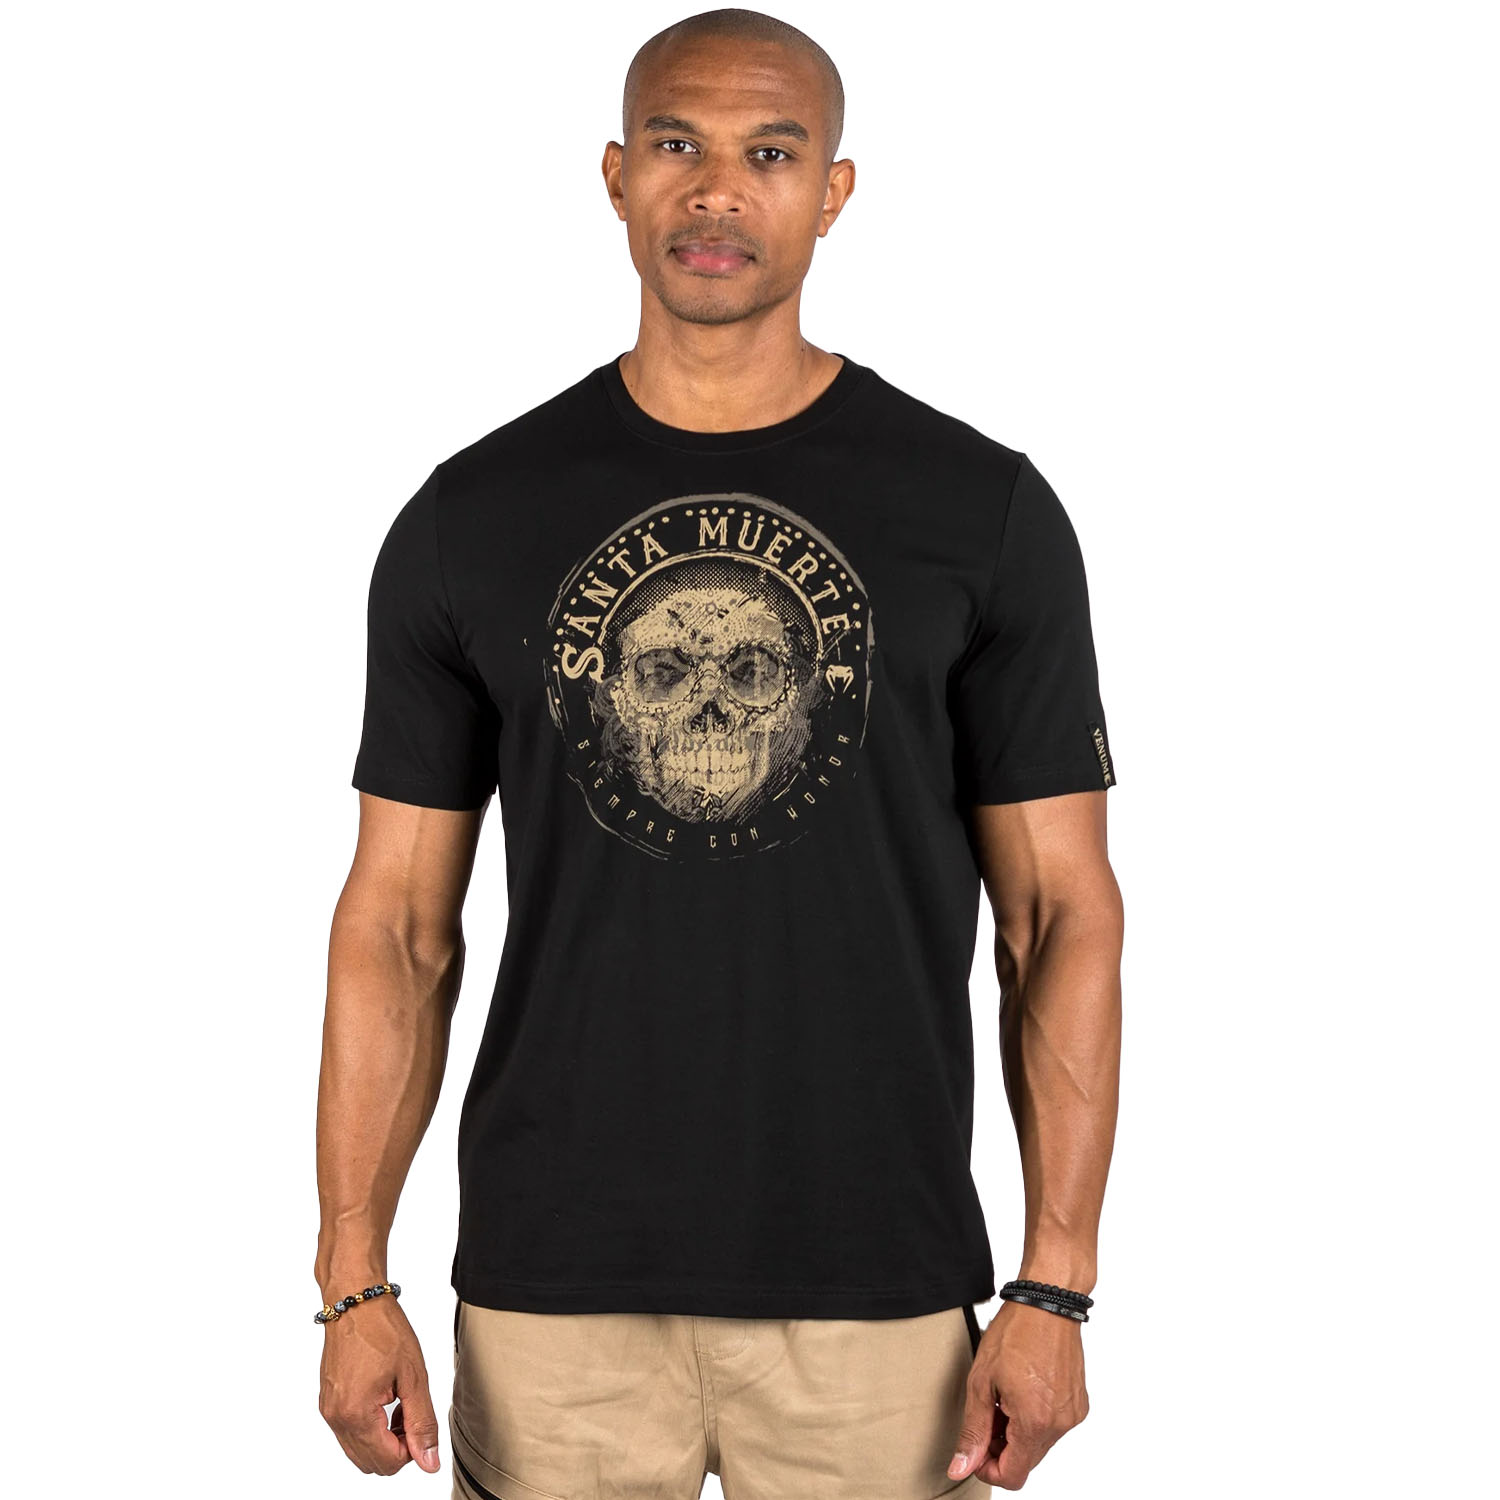 VENUM T-Shirt, Santa Muerte, Dark Side, schwarz-braun, S